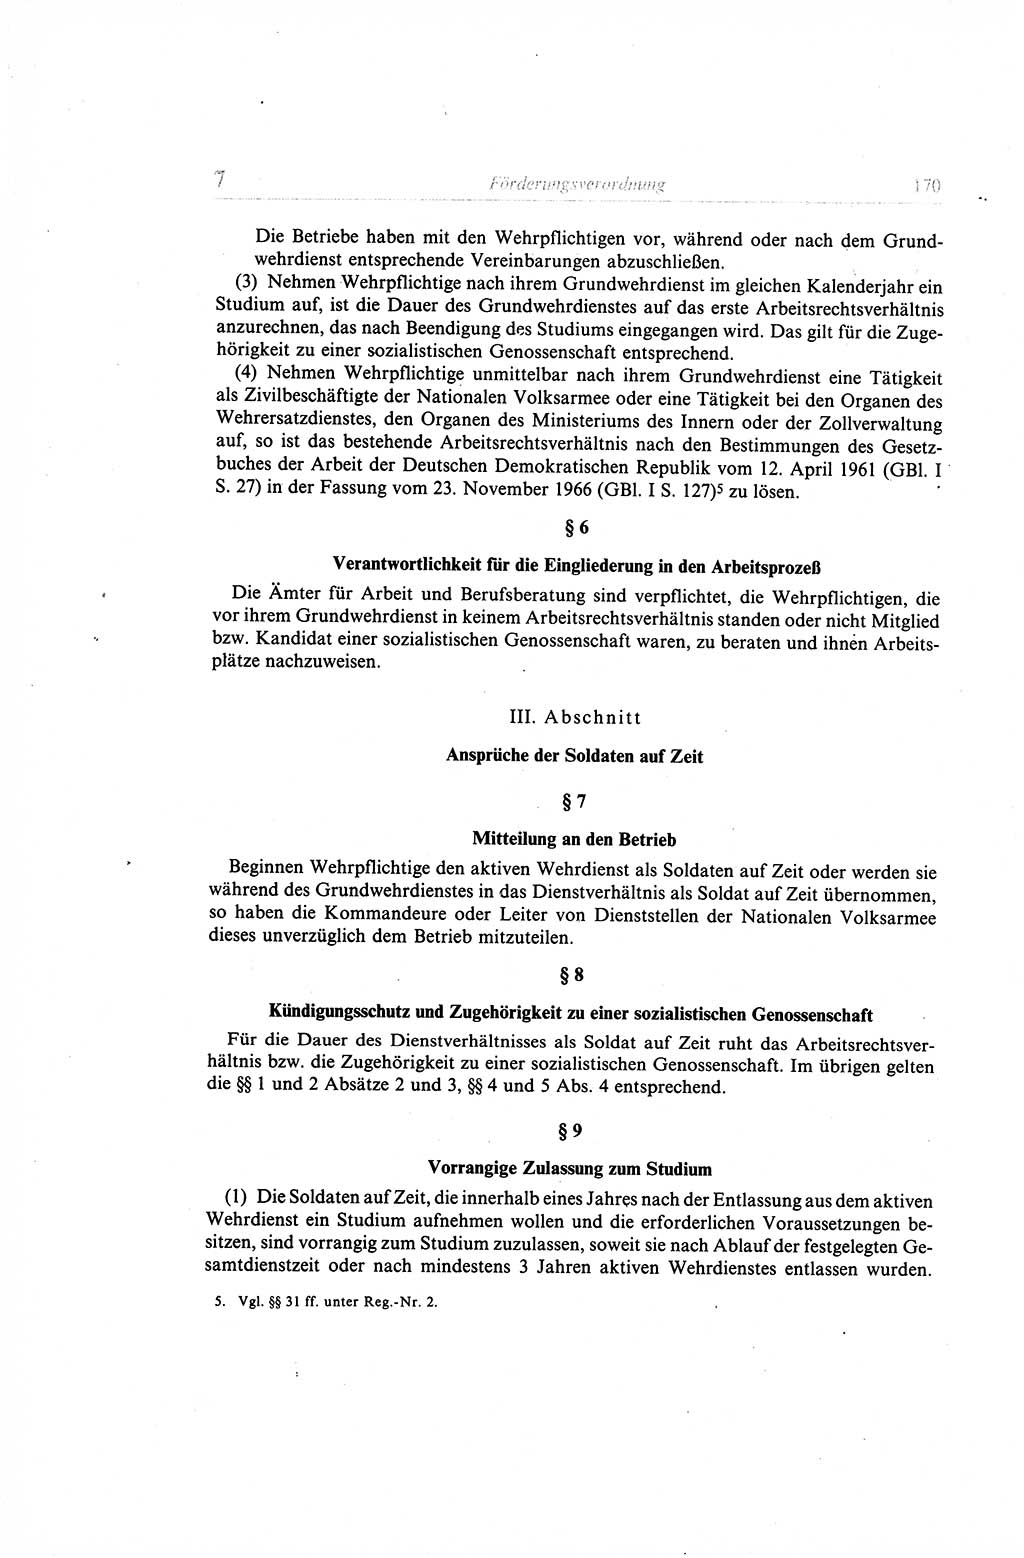 Gesetzbuch der Arbeit (GBA) und andere ausgewählte rechtliche Bestimmungen [Deutsche Demokratische Republik (DDR)] 1968, Seite 170 (GBA DDR 1968, S. 170)